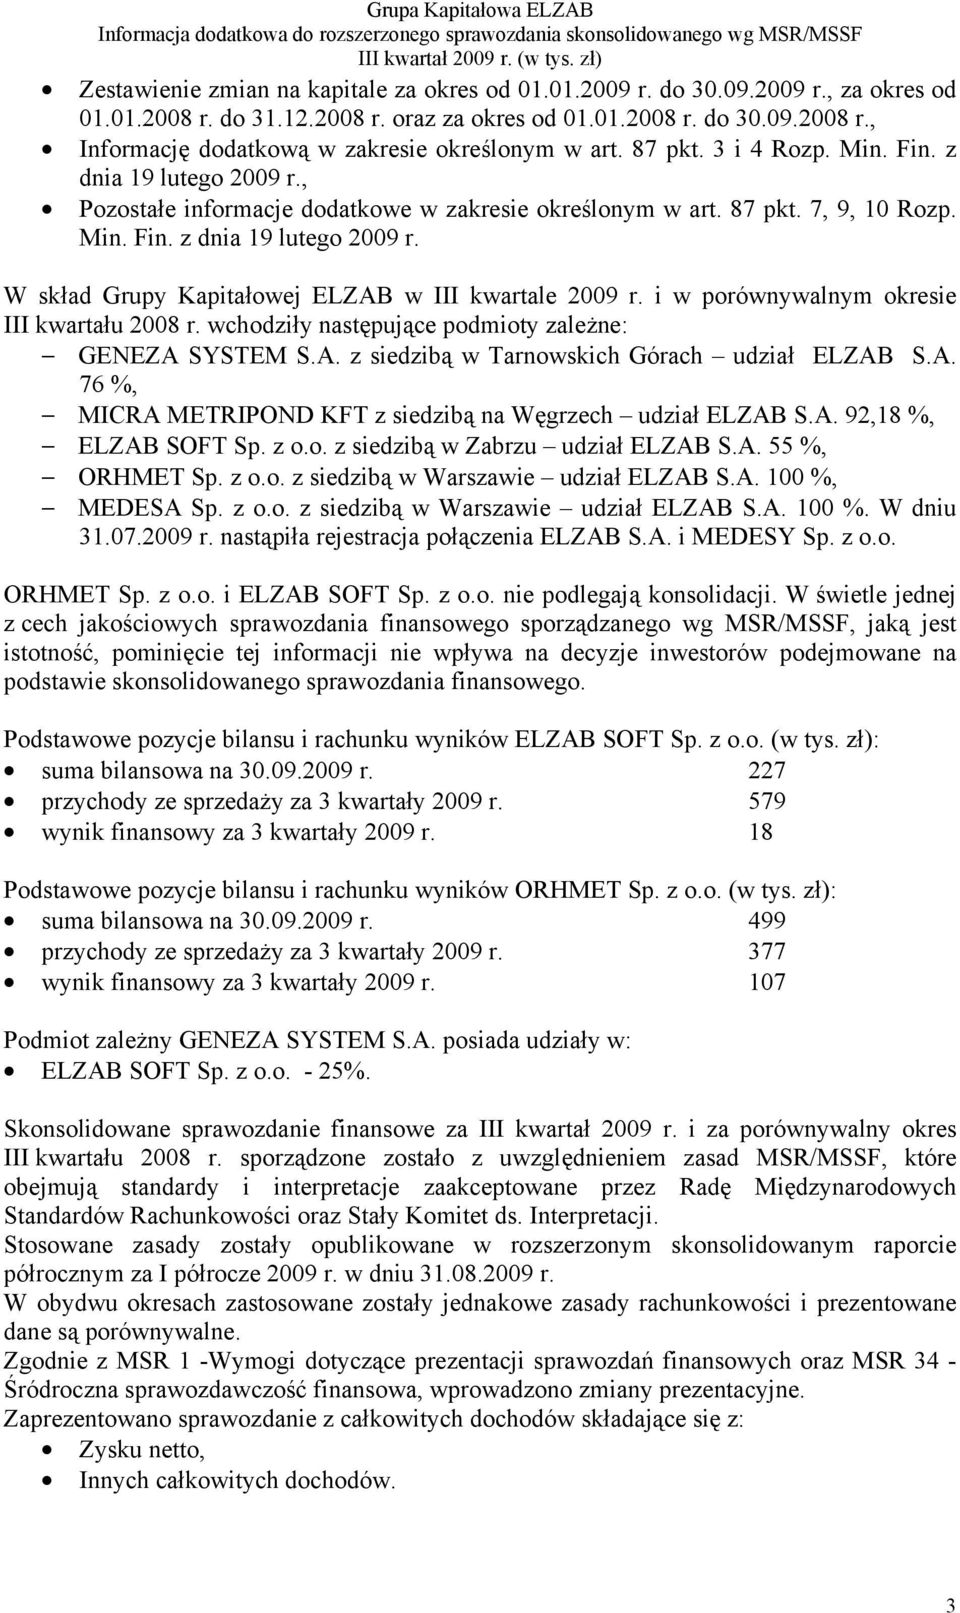 i w porównywalnym okresie III kwartału 2008 r. wchodziły następujące podmioty zależne: GENEZA SYSTEM S.A. z siedzibą w Tarnowskich Górach udział ELZAB S.A. 76 %, MICRA METRIPOND KFT z siedzibą na Węgrzech udział ELZAB S.